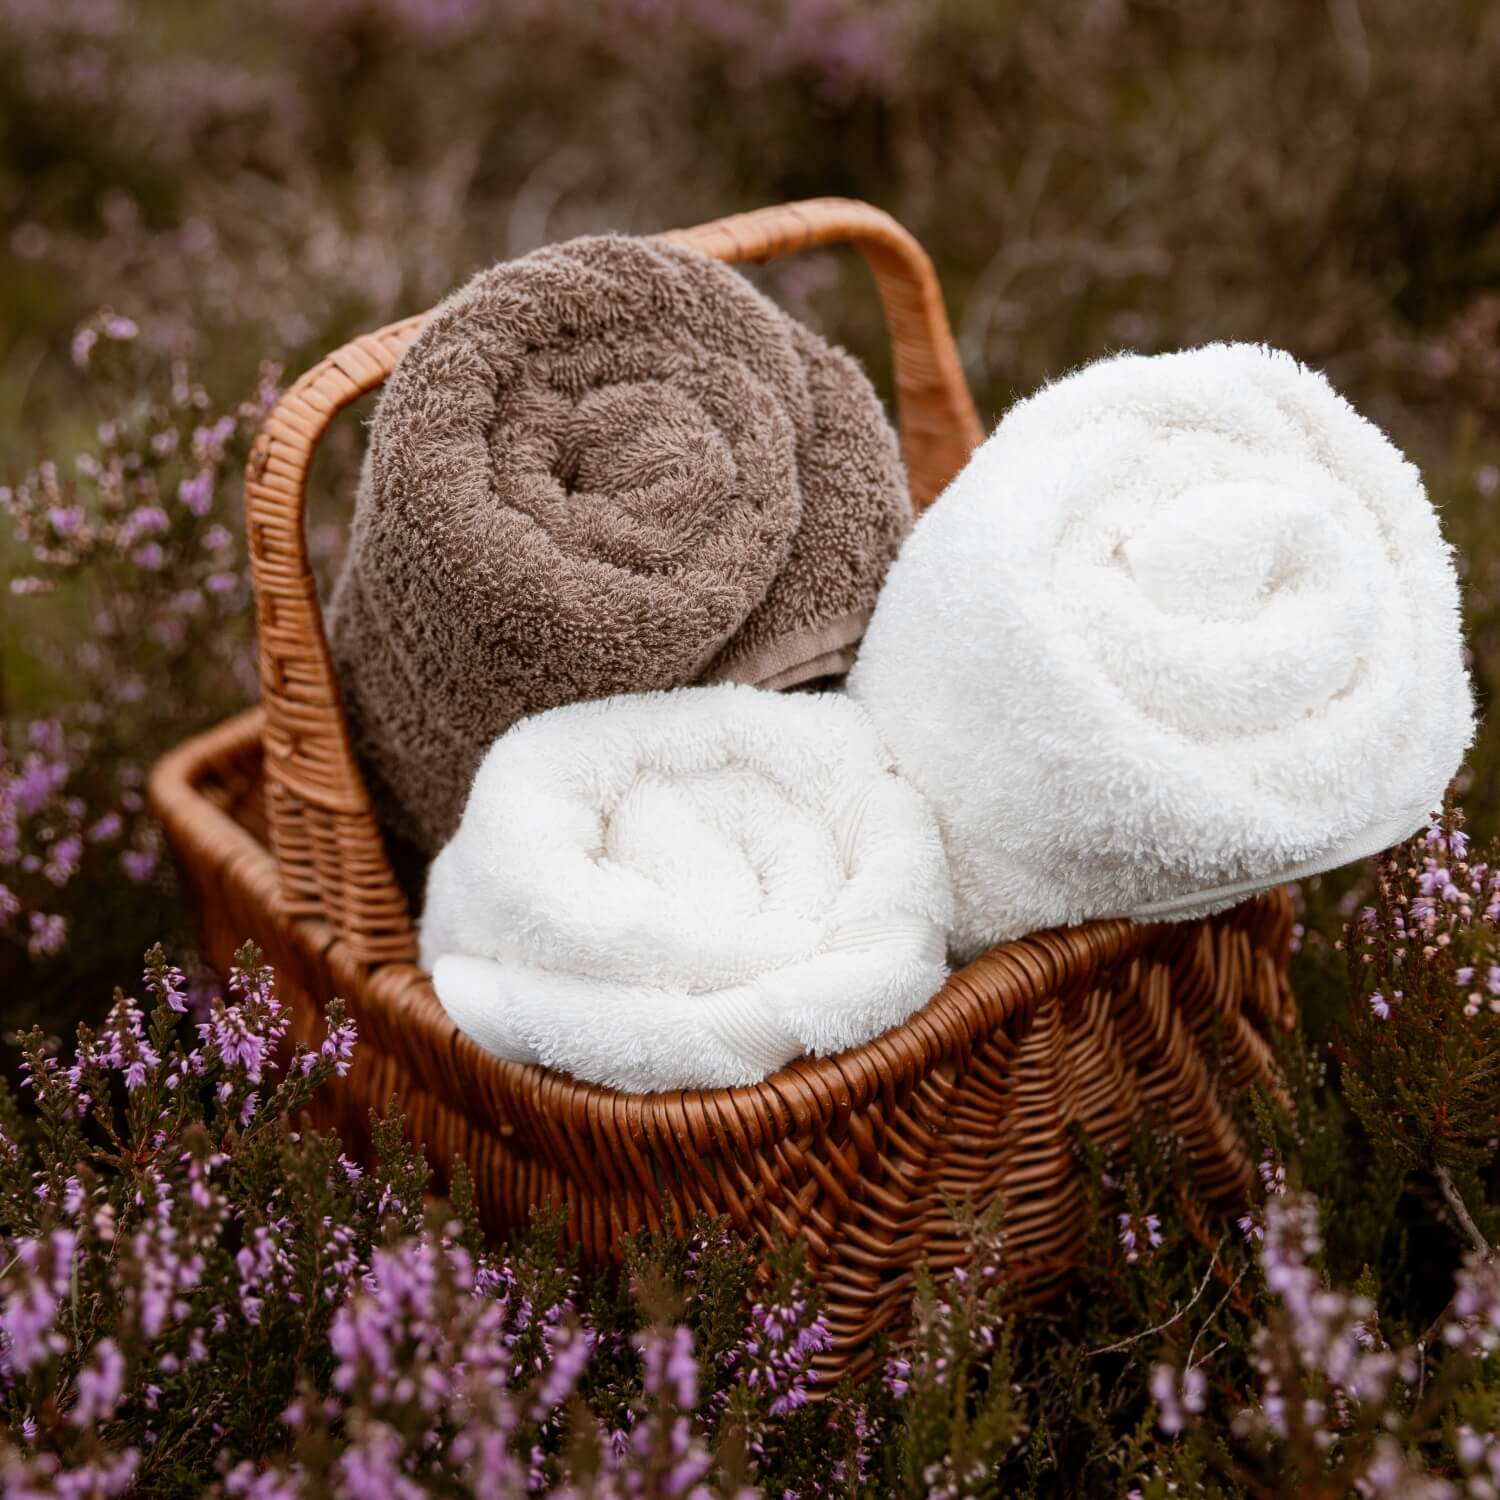 To hvide håndklæder og et brunt håndklæde i en brun, vævet kurv liggende i en eng med lyserøde blomster